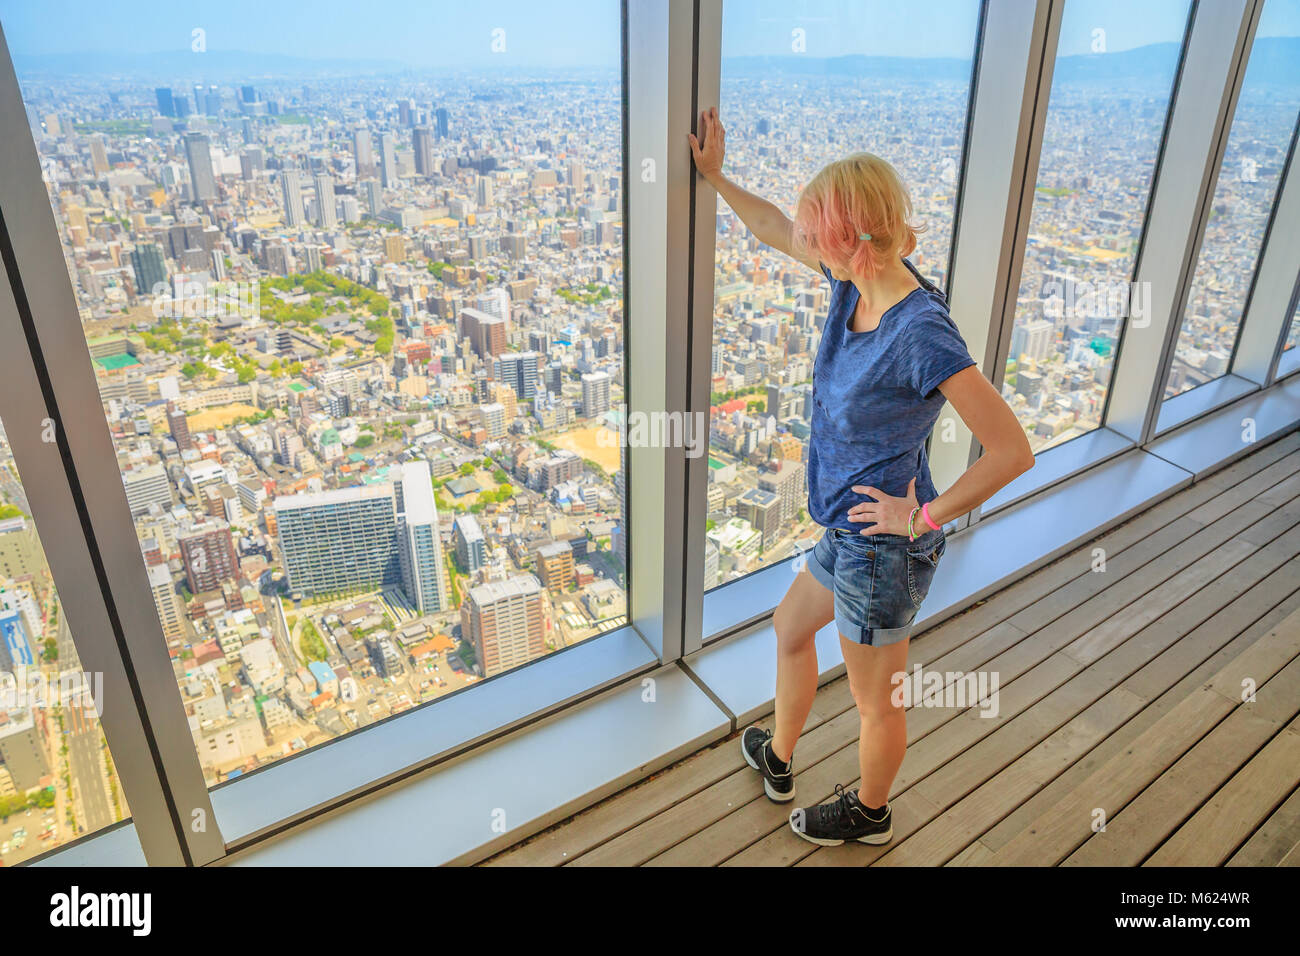 Luftbild Skyline von Osaka in Japan. Reise und Tourismus Asien Konzept. Junge kaukasier touristische Mädchen suchen Osaka Stadtbild von der Aussichtsplattform. Stockfoto